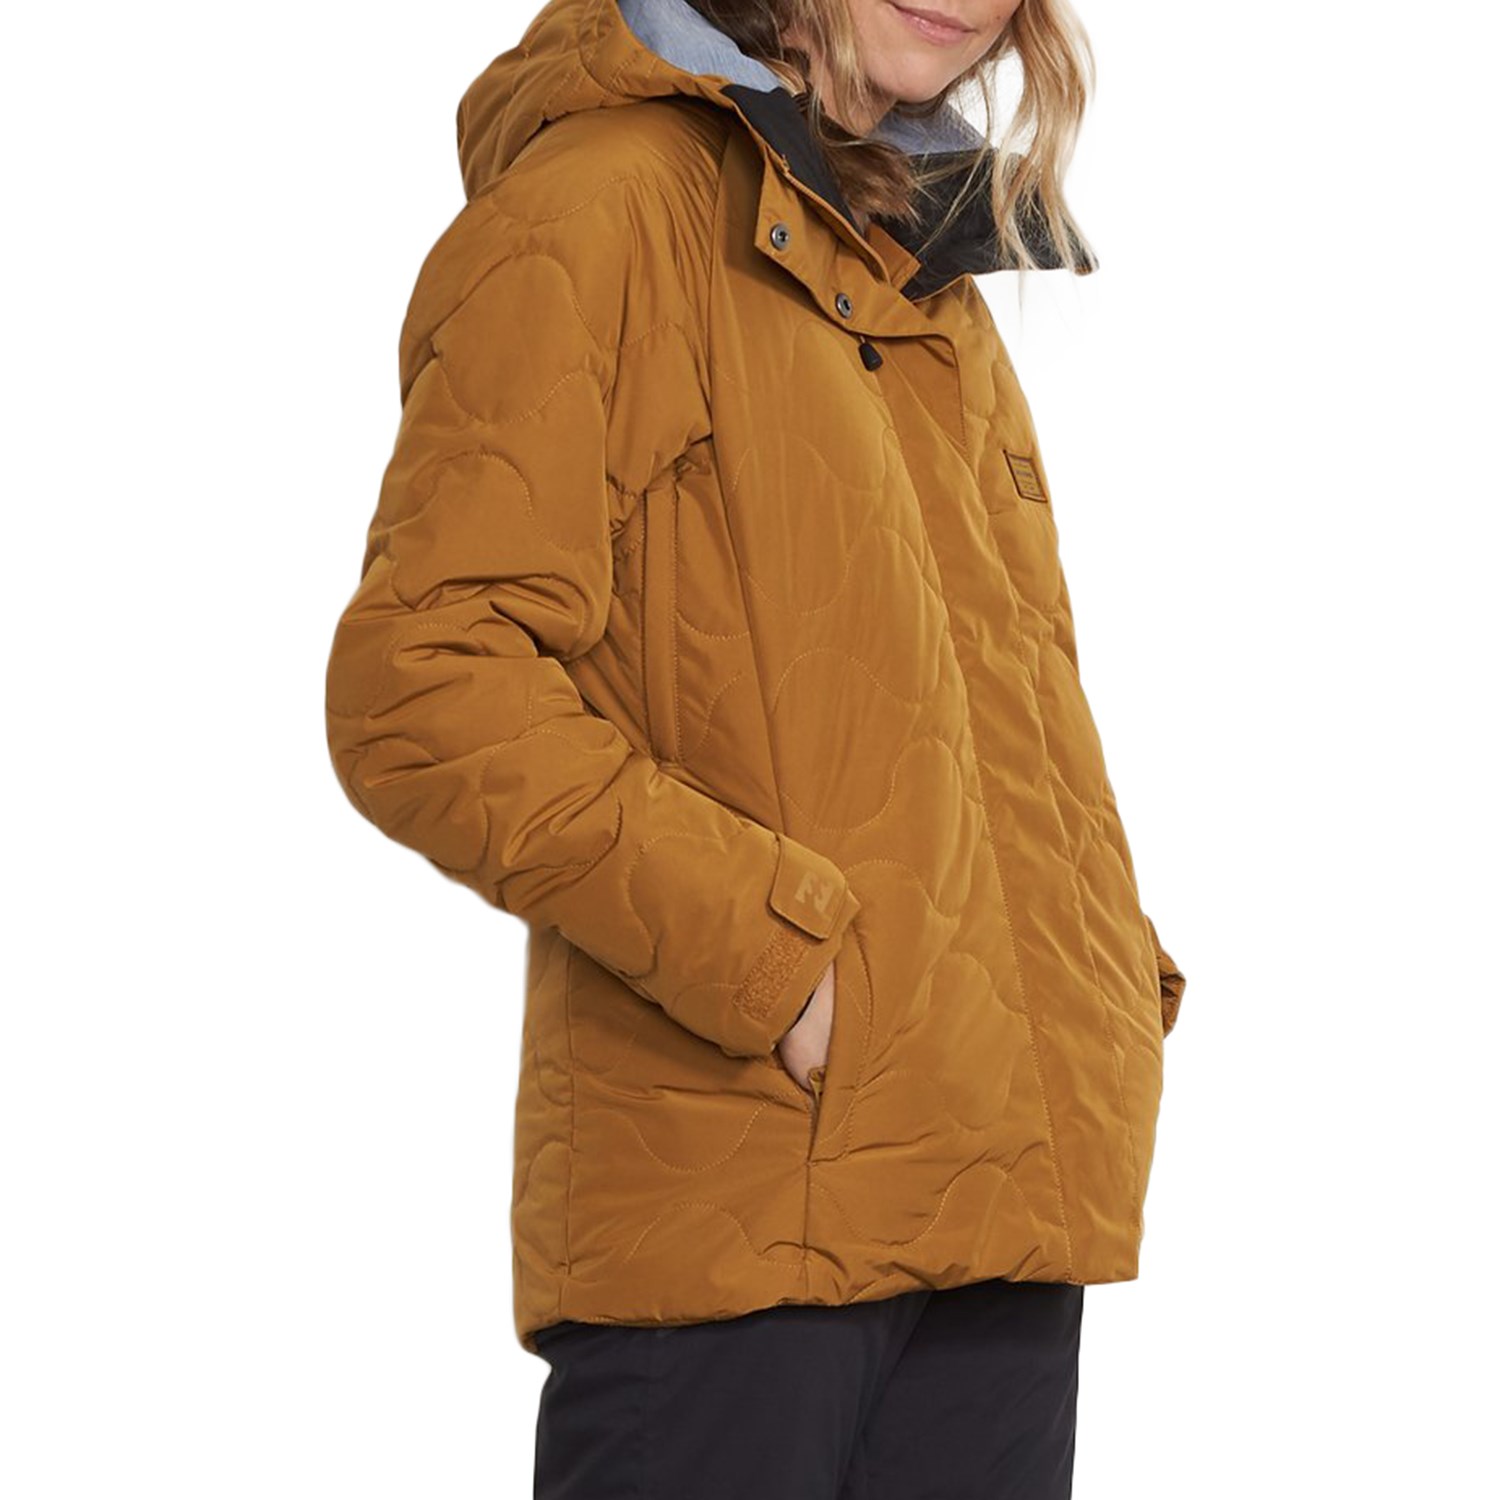 End Jacket size Medium Beeswax Rrp £215 Stunning Women's Billabong Bliss High 